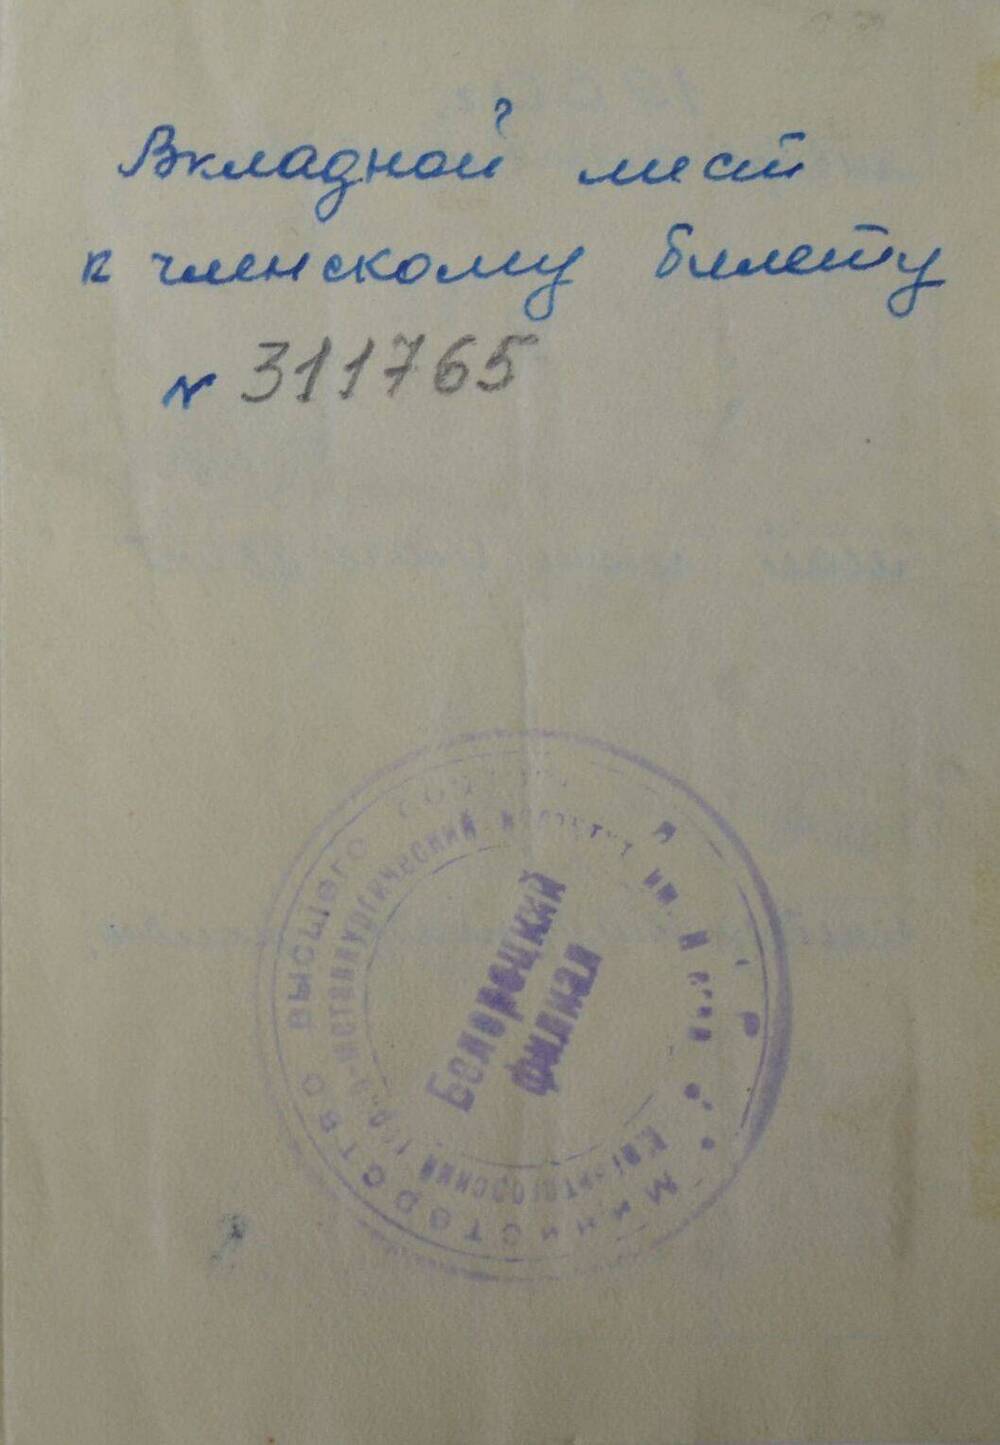 Лист вкладной Лист вкладной к членскому билету № 311765 Борозинца Ленфрида Григорьевича